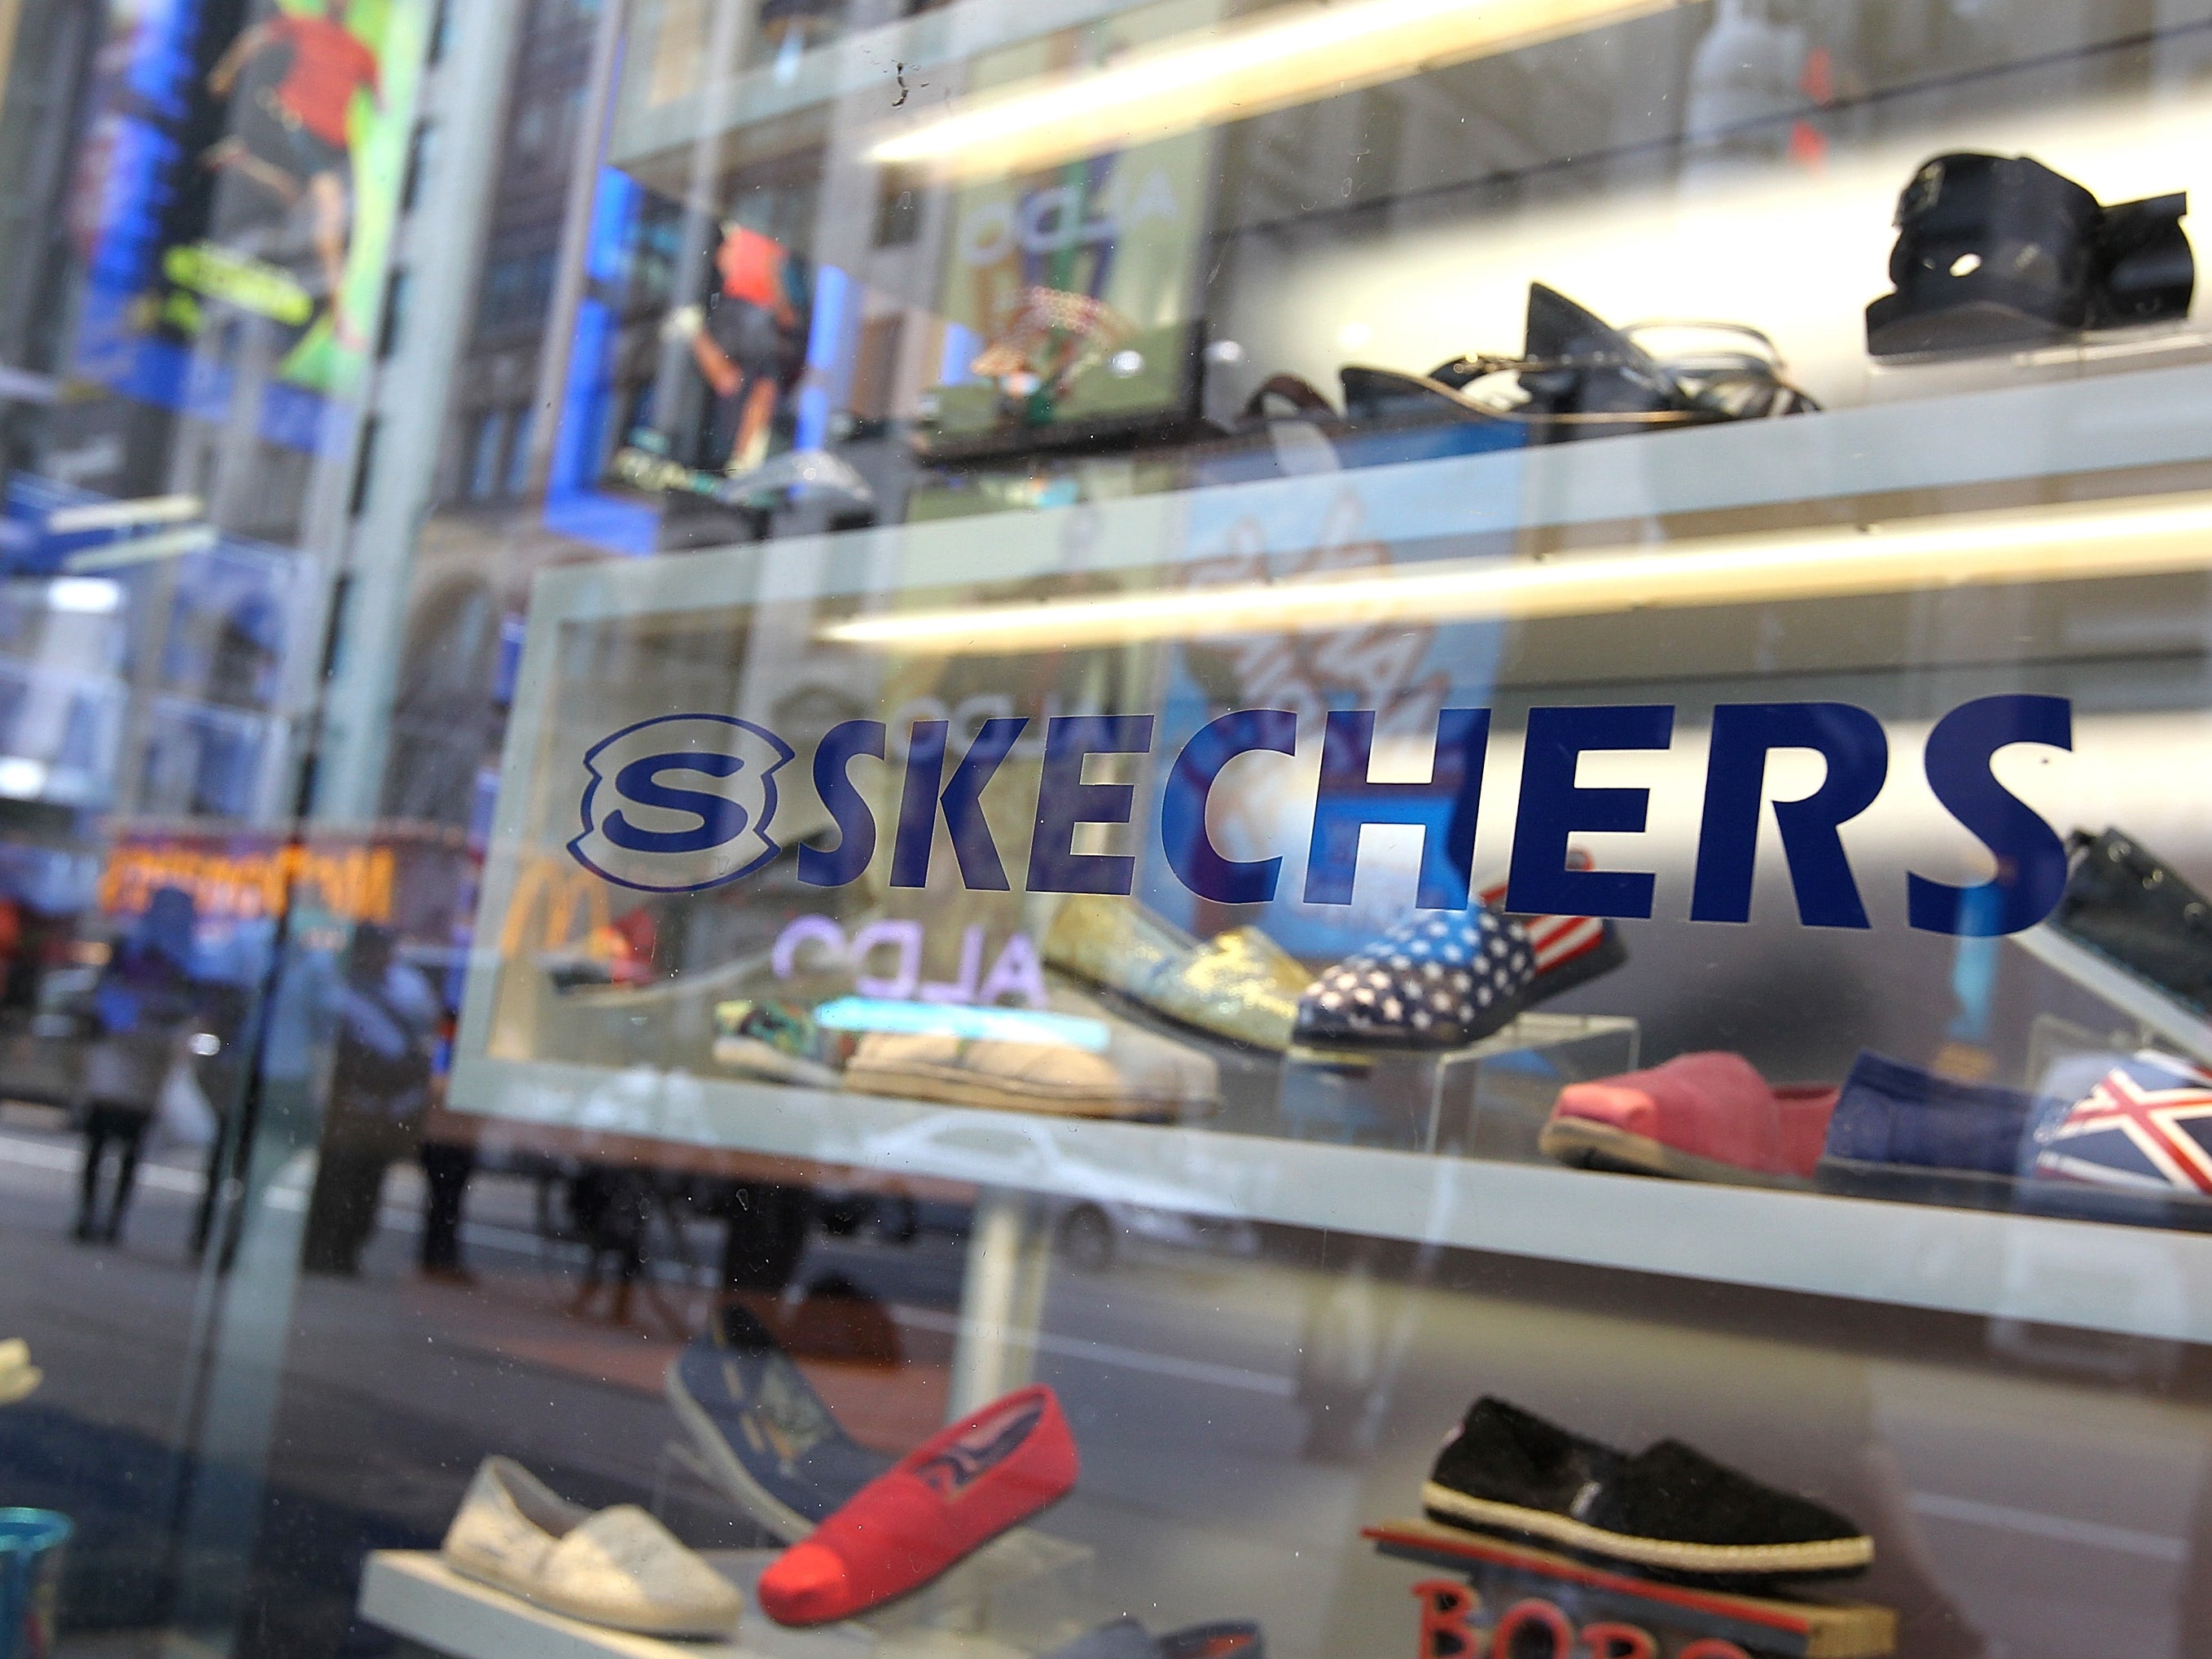 Skechers Stock: Attractive After 20% Price Drop (SKX) | Seeking Alpha